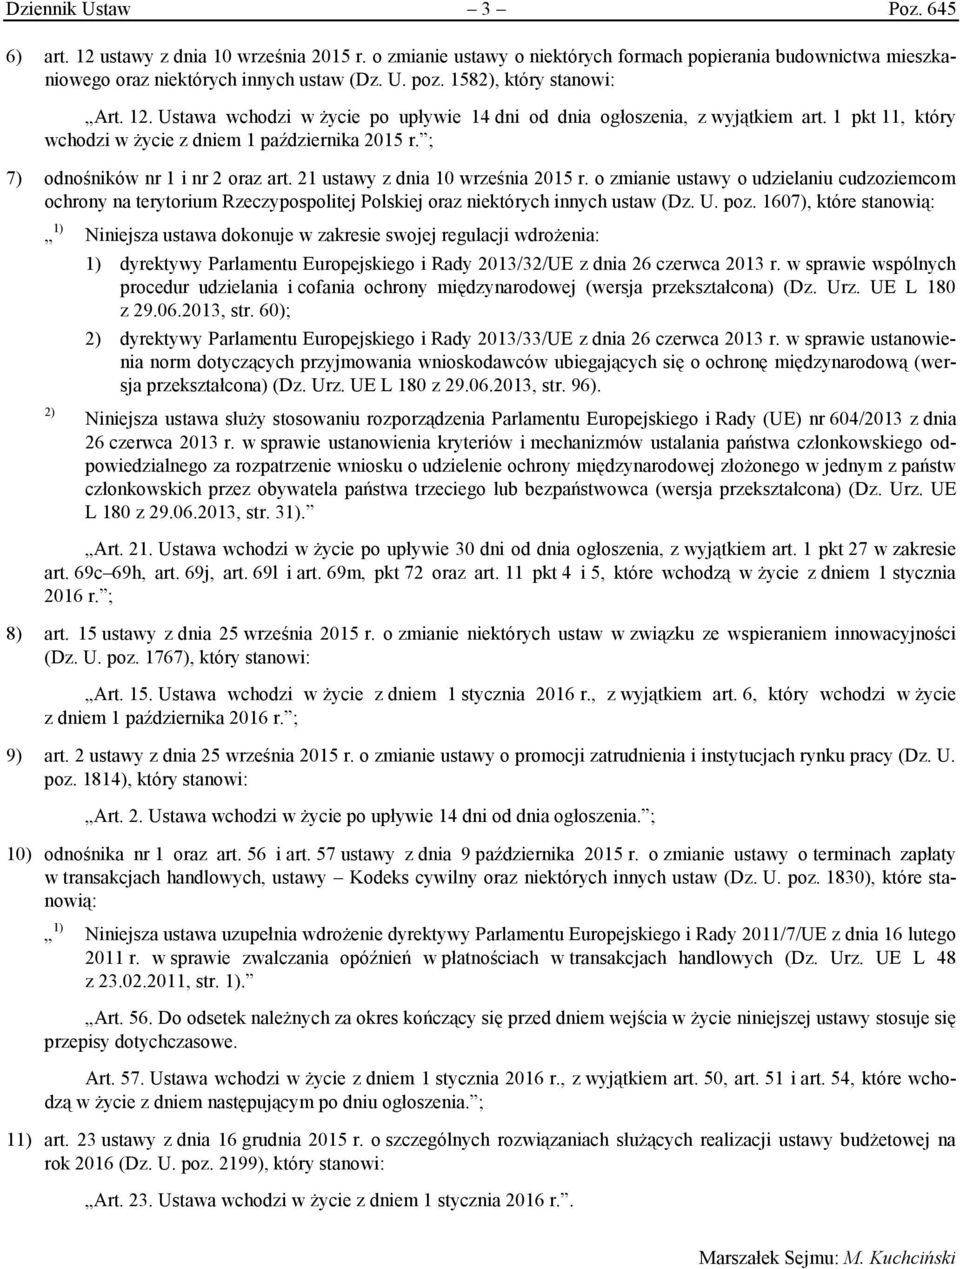 ; 7) odnośników nr 1 i nr 2 oraz art. 21 ustawy z dnia 10 września 2015 r. o zmianie ustawy o udzielaniu cudzoziemcom ochrony na terytorium Rzeczypospolitej Polskiej oraz niektórych innych ustaw (Dz.